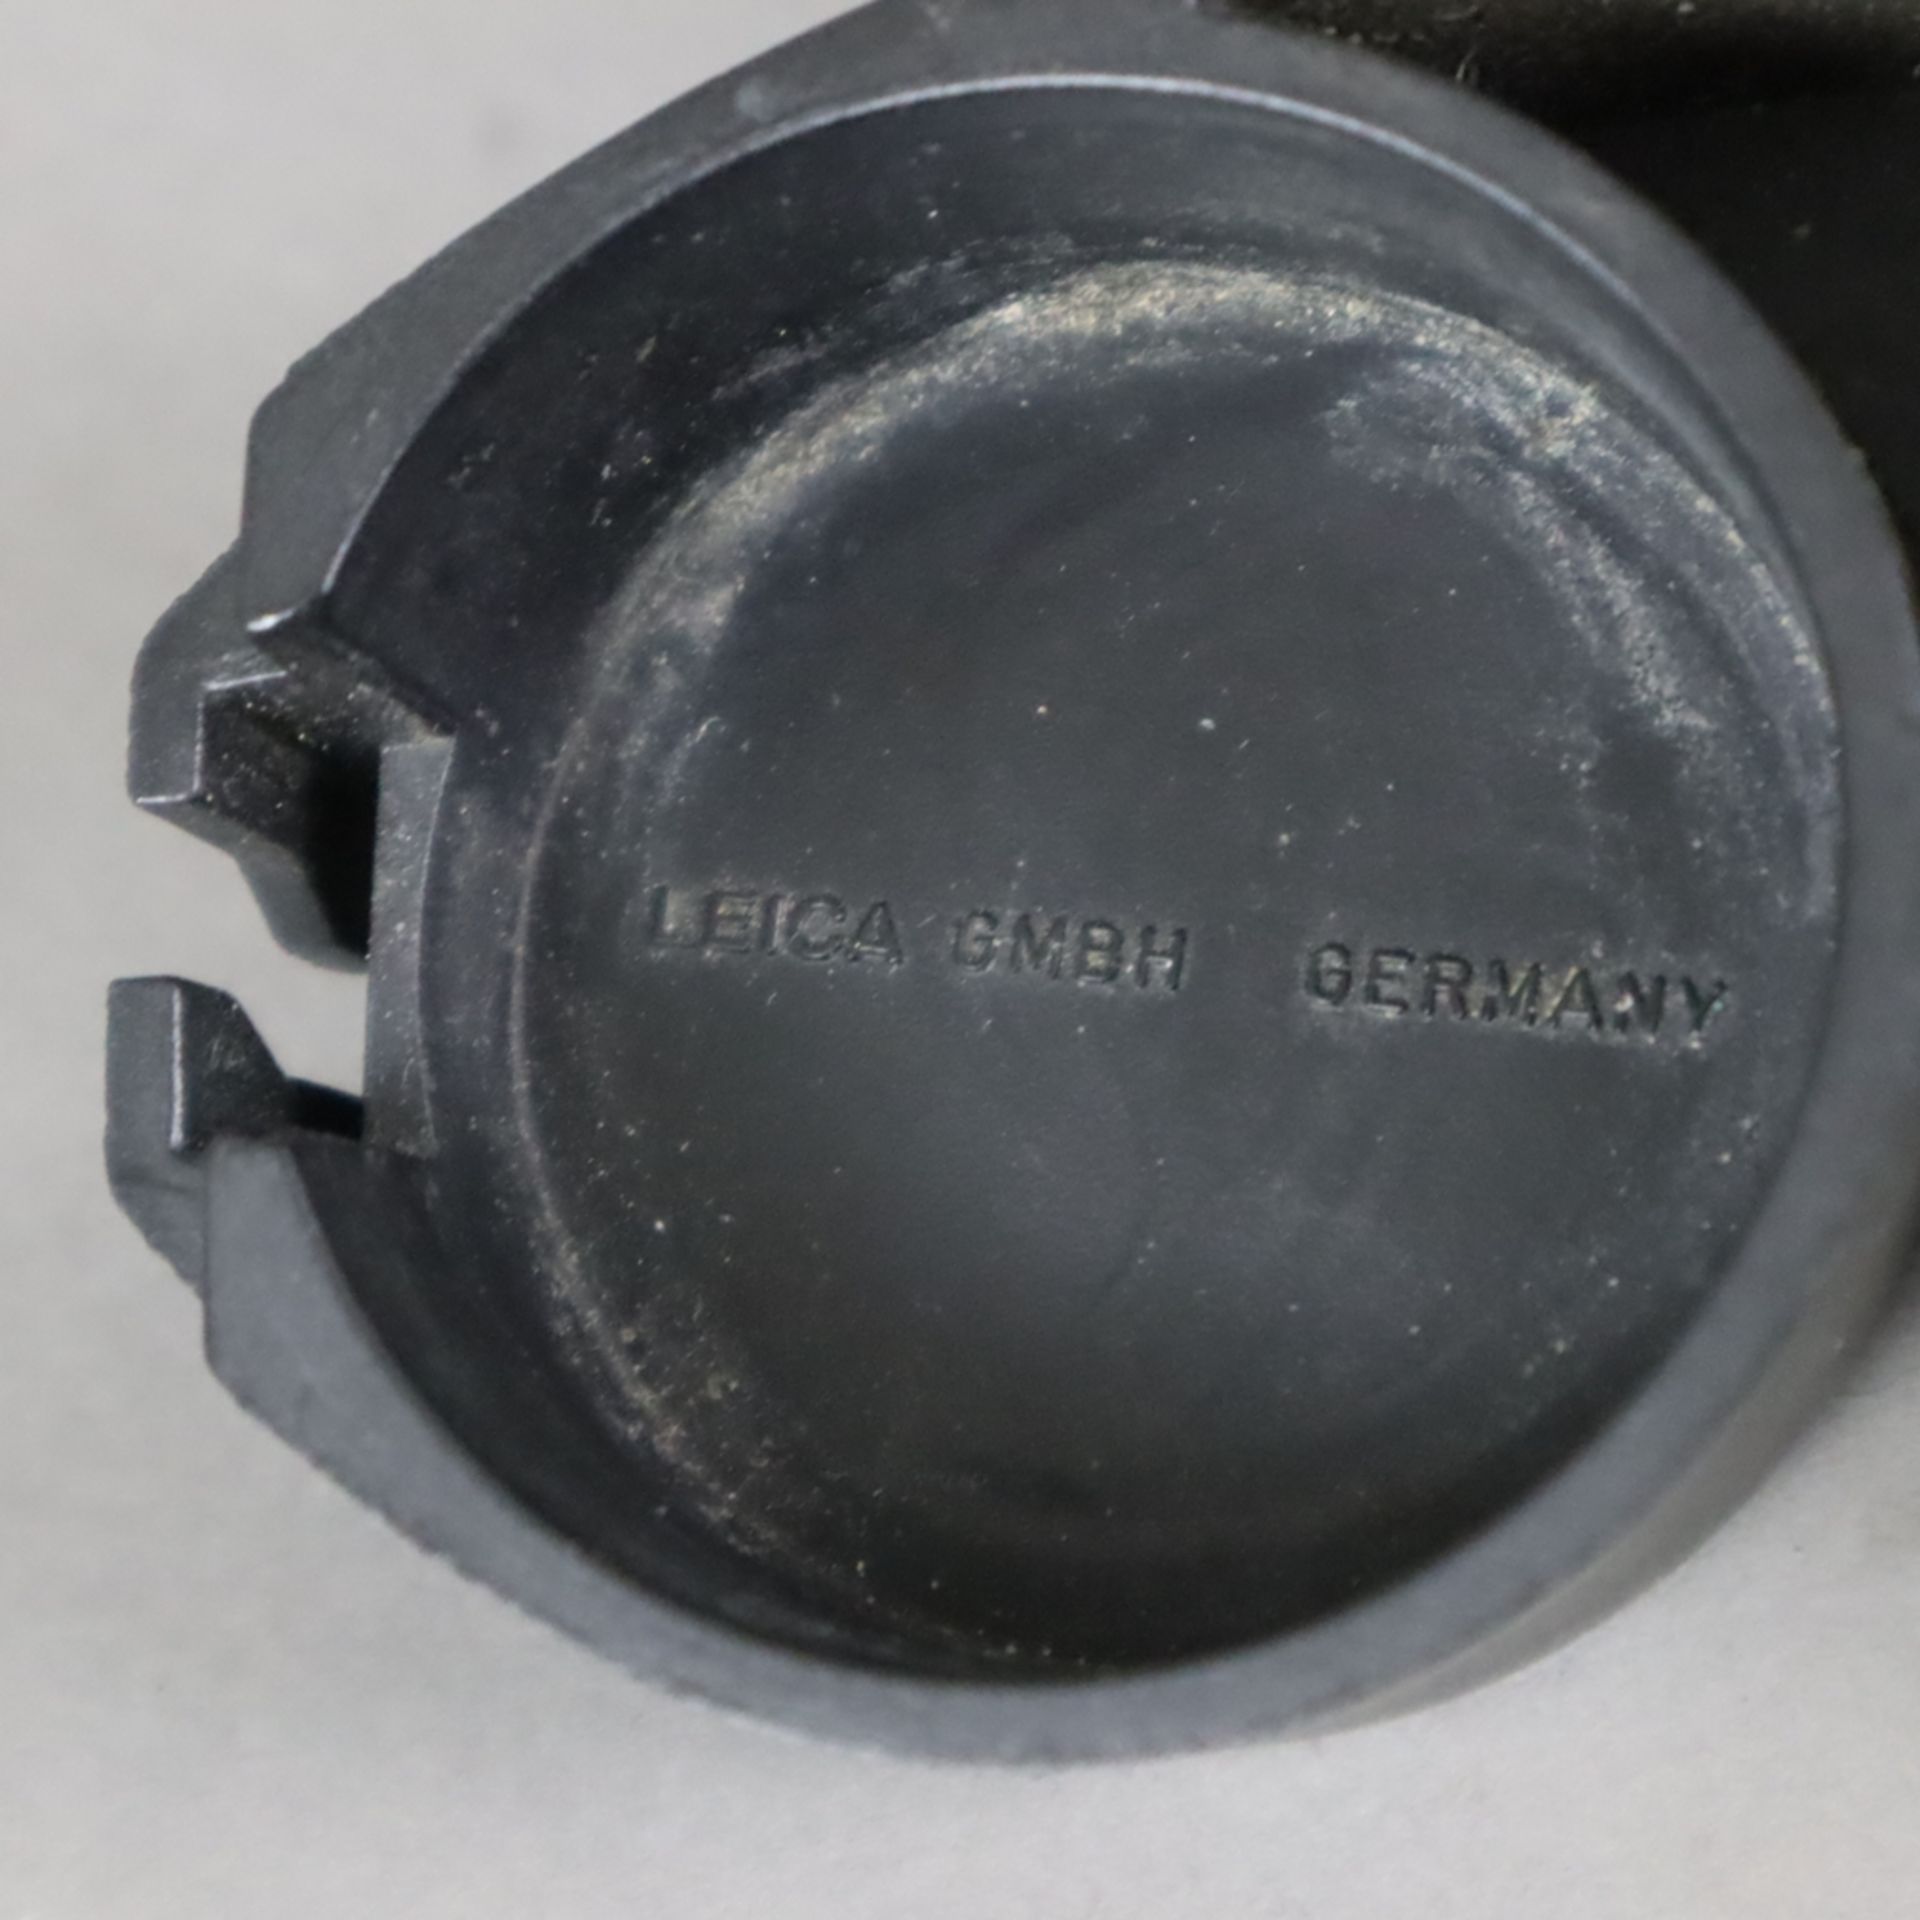 Leica Fernglas - 7x42 BA, Seriennummer 42144, guter Zustand, aus Raucherhaushalt - Bild 6 aus 6